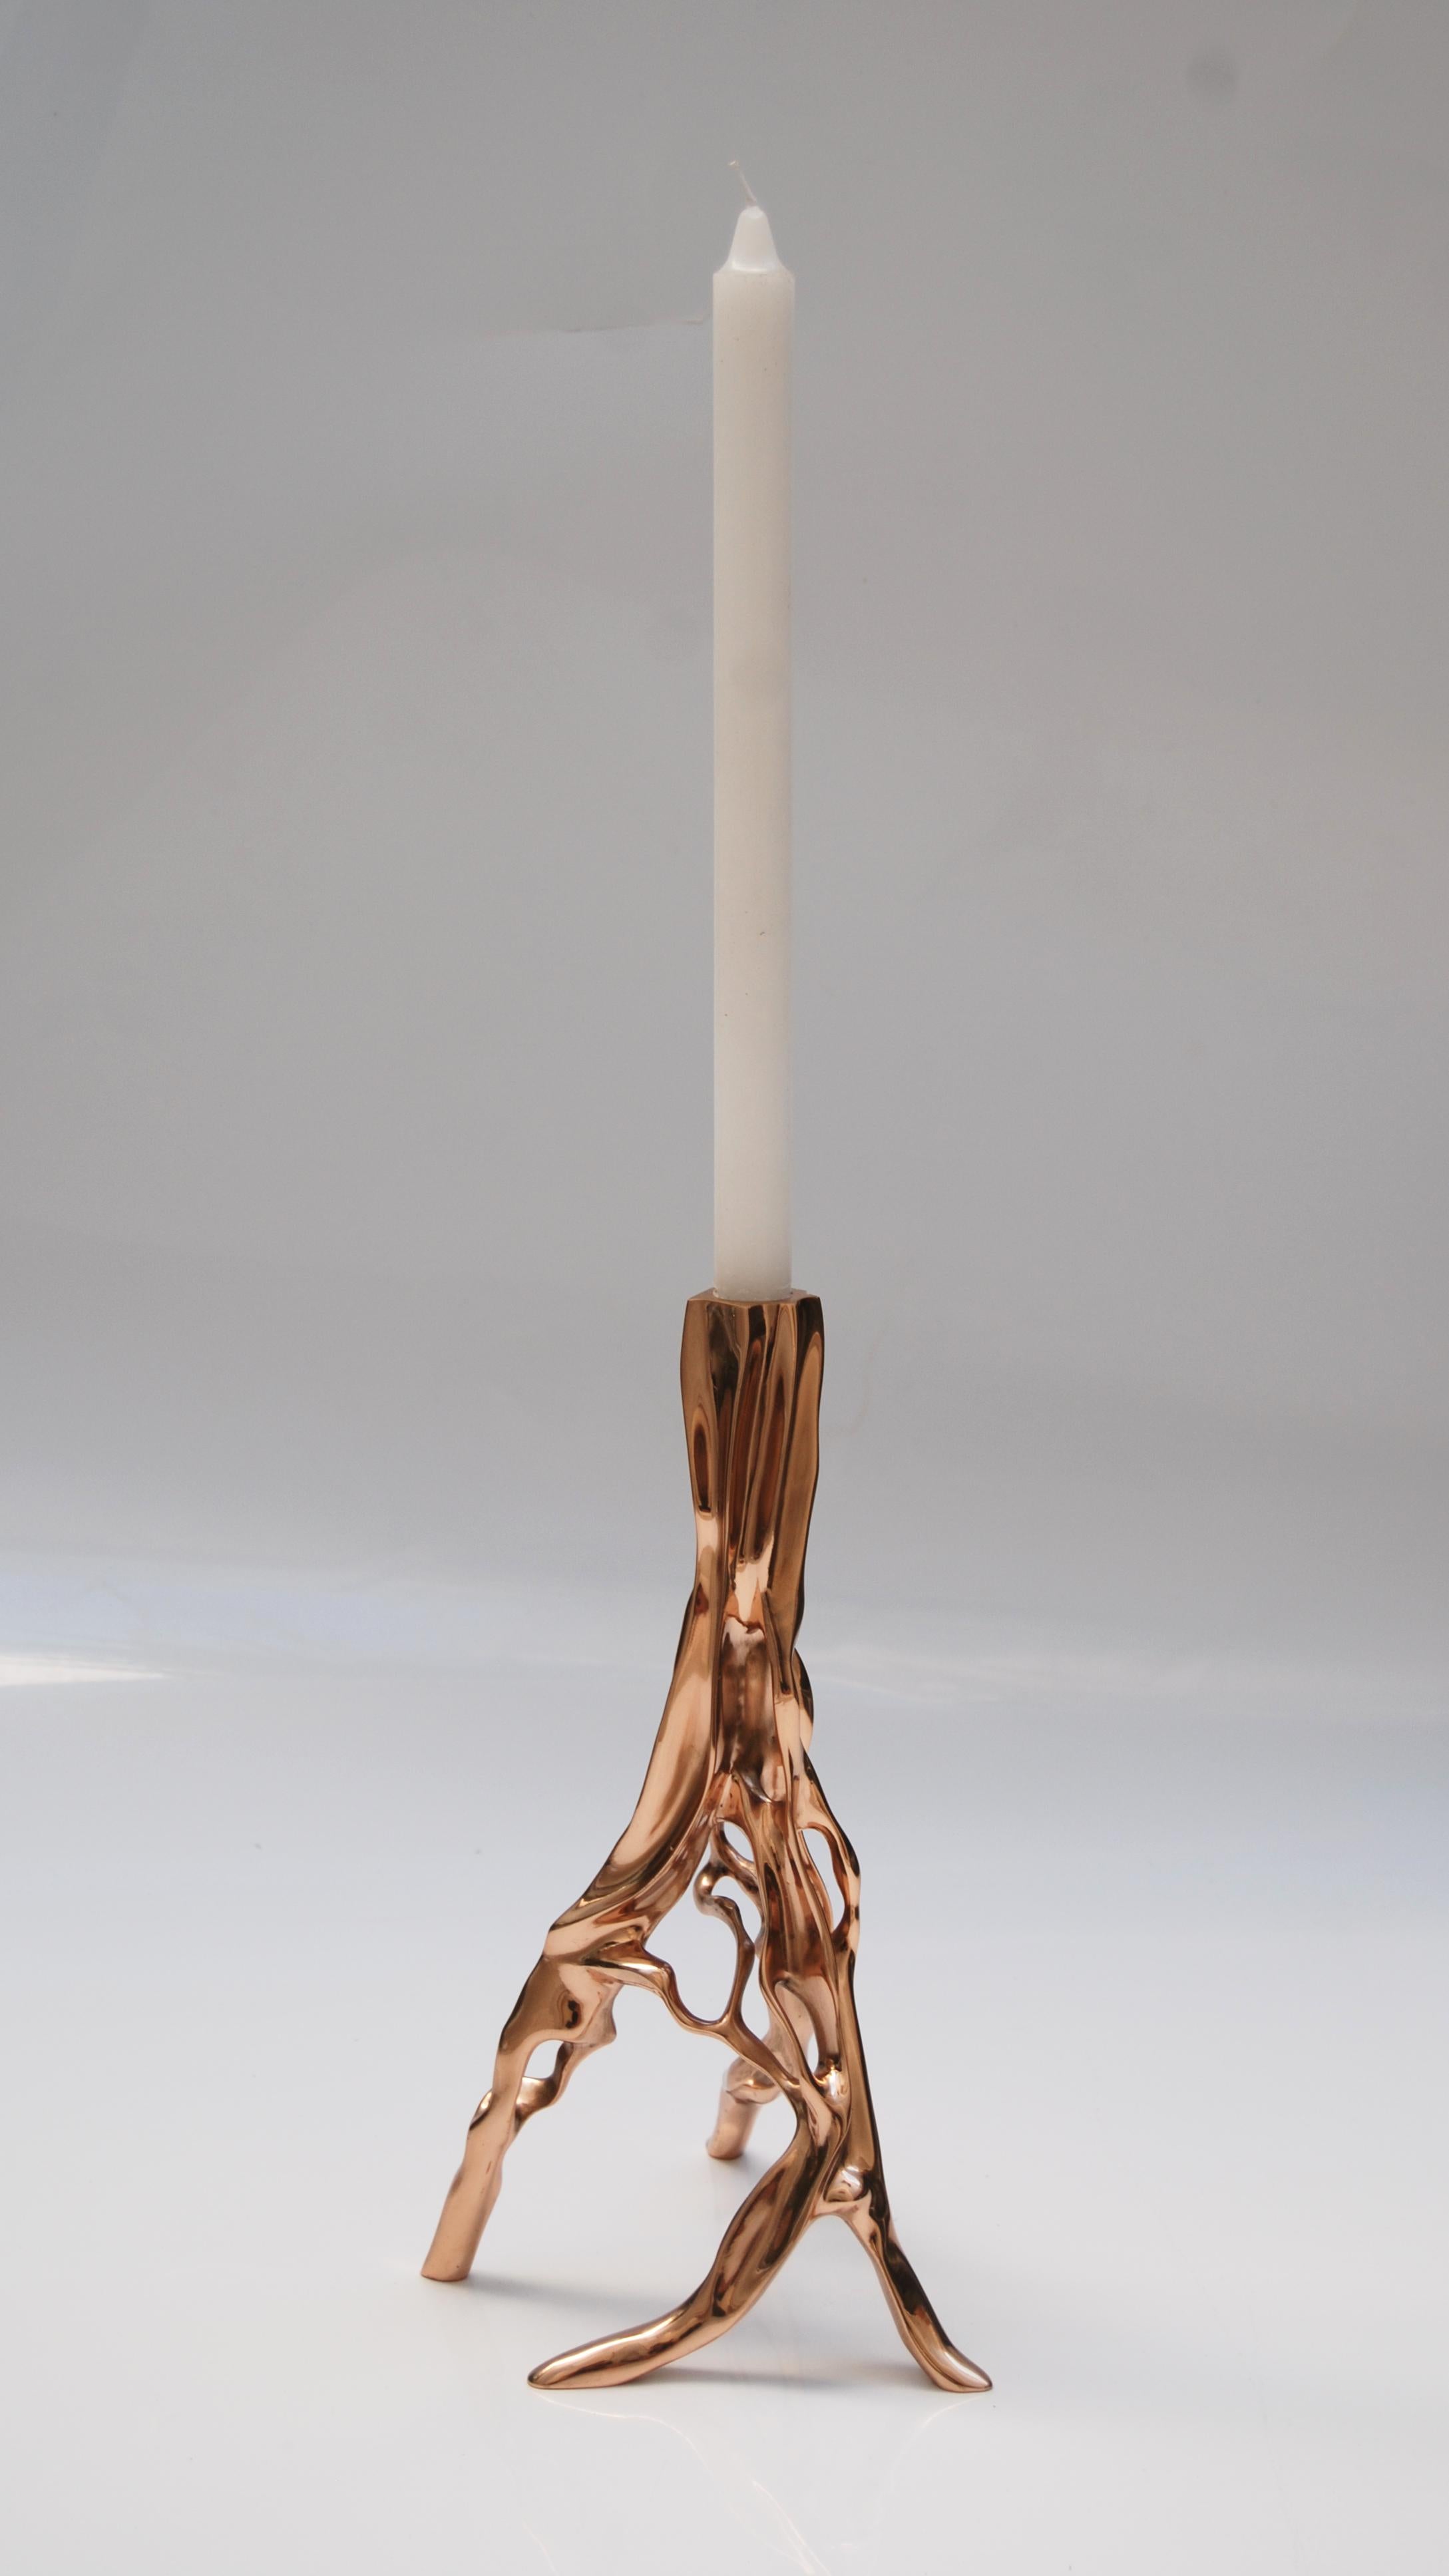 Kerzenleuchter aus polierter Bronze von FAKASAKA Design/One
Abmessungen: B 20 x T 19 x H 30,5 cm
MATERIALIEN: Polierte Bronze.
 